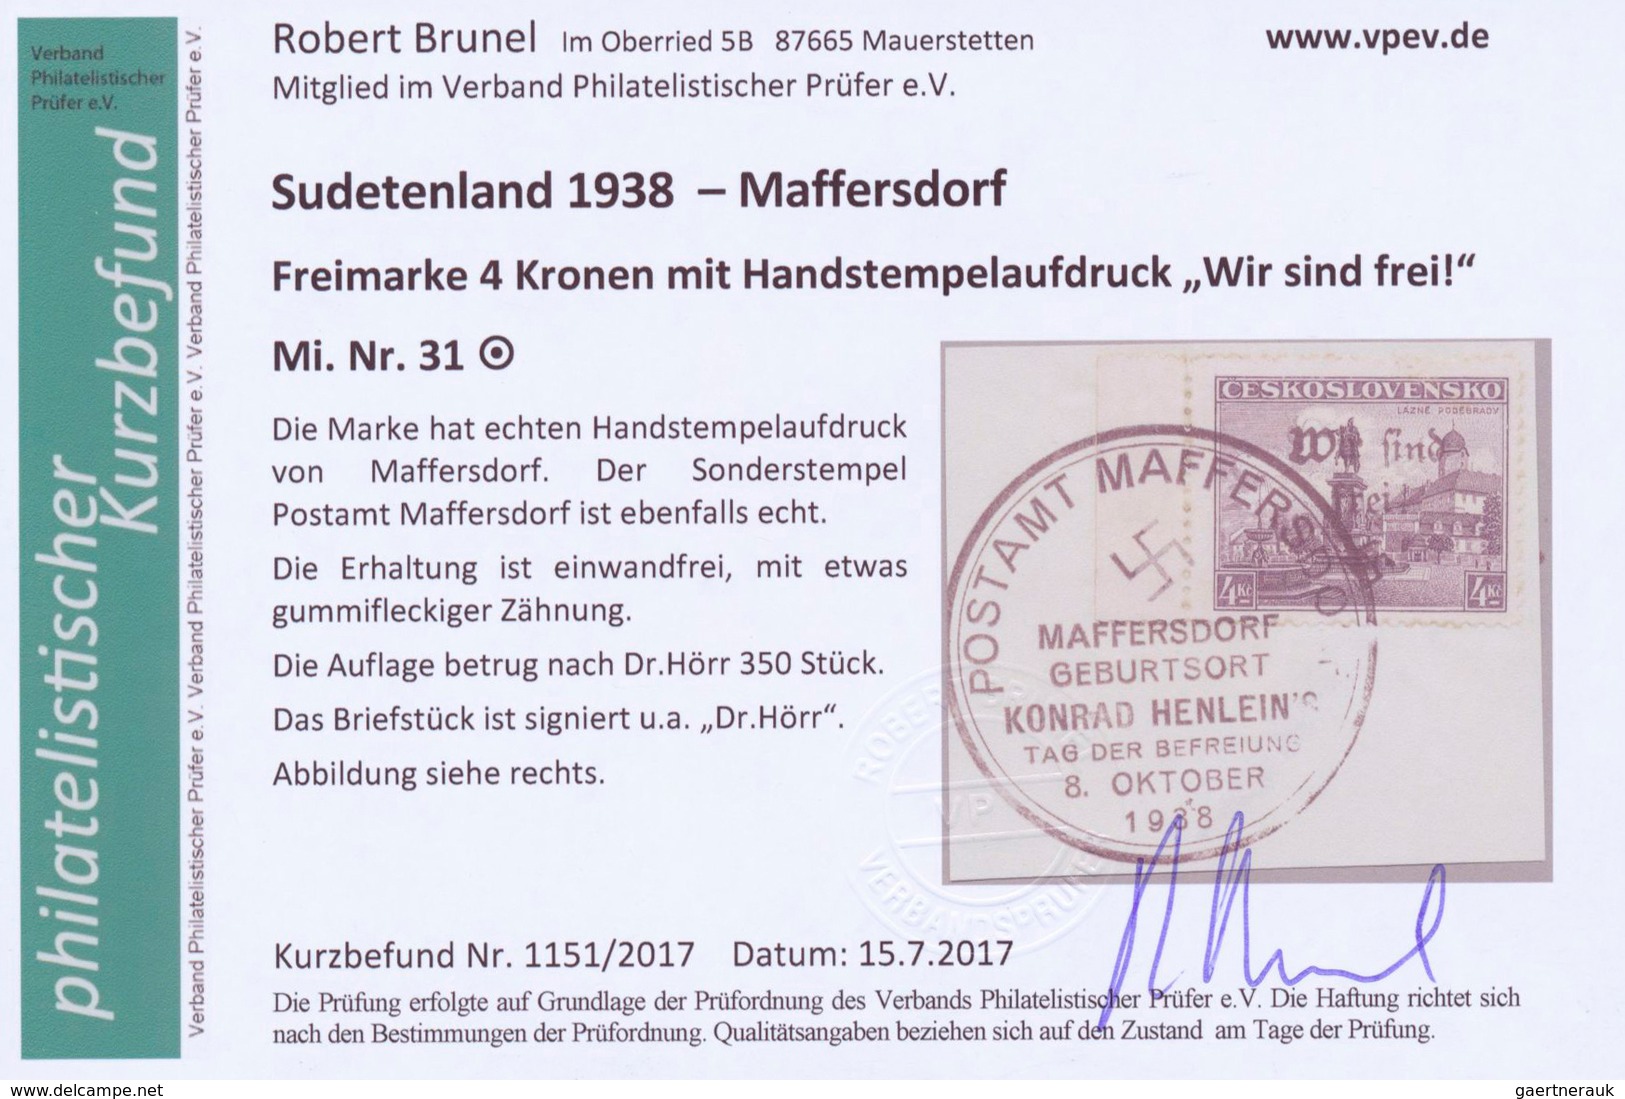 19207 Sudetenland - Maffersdorf: 1938, Mi.Nr. 14, 29, 31-34, 6 Werte auf Briefstück sowie Nr. 23 auf AK (G